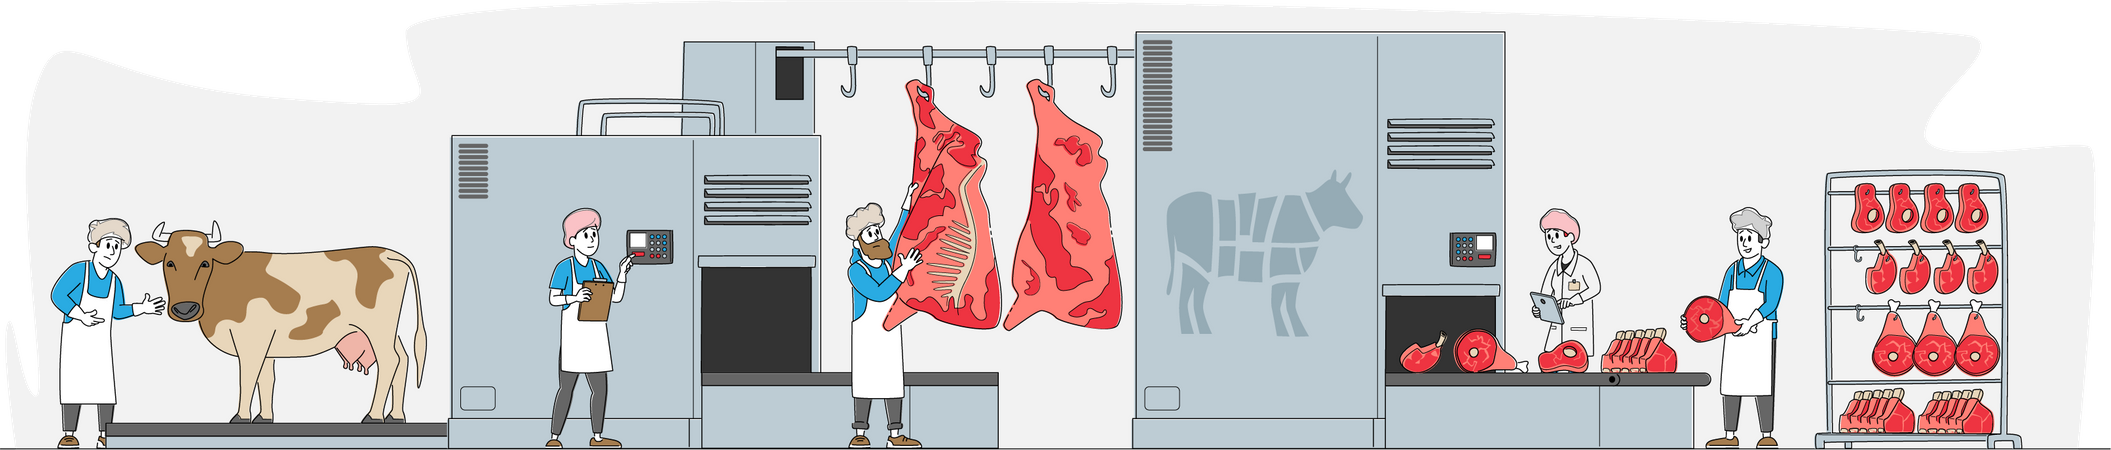 Fábrica de carne  Ilustración